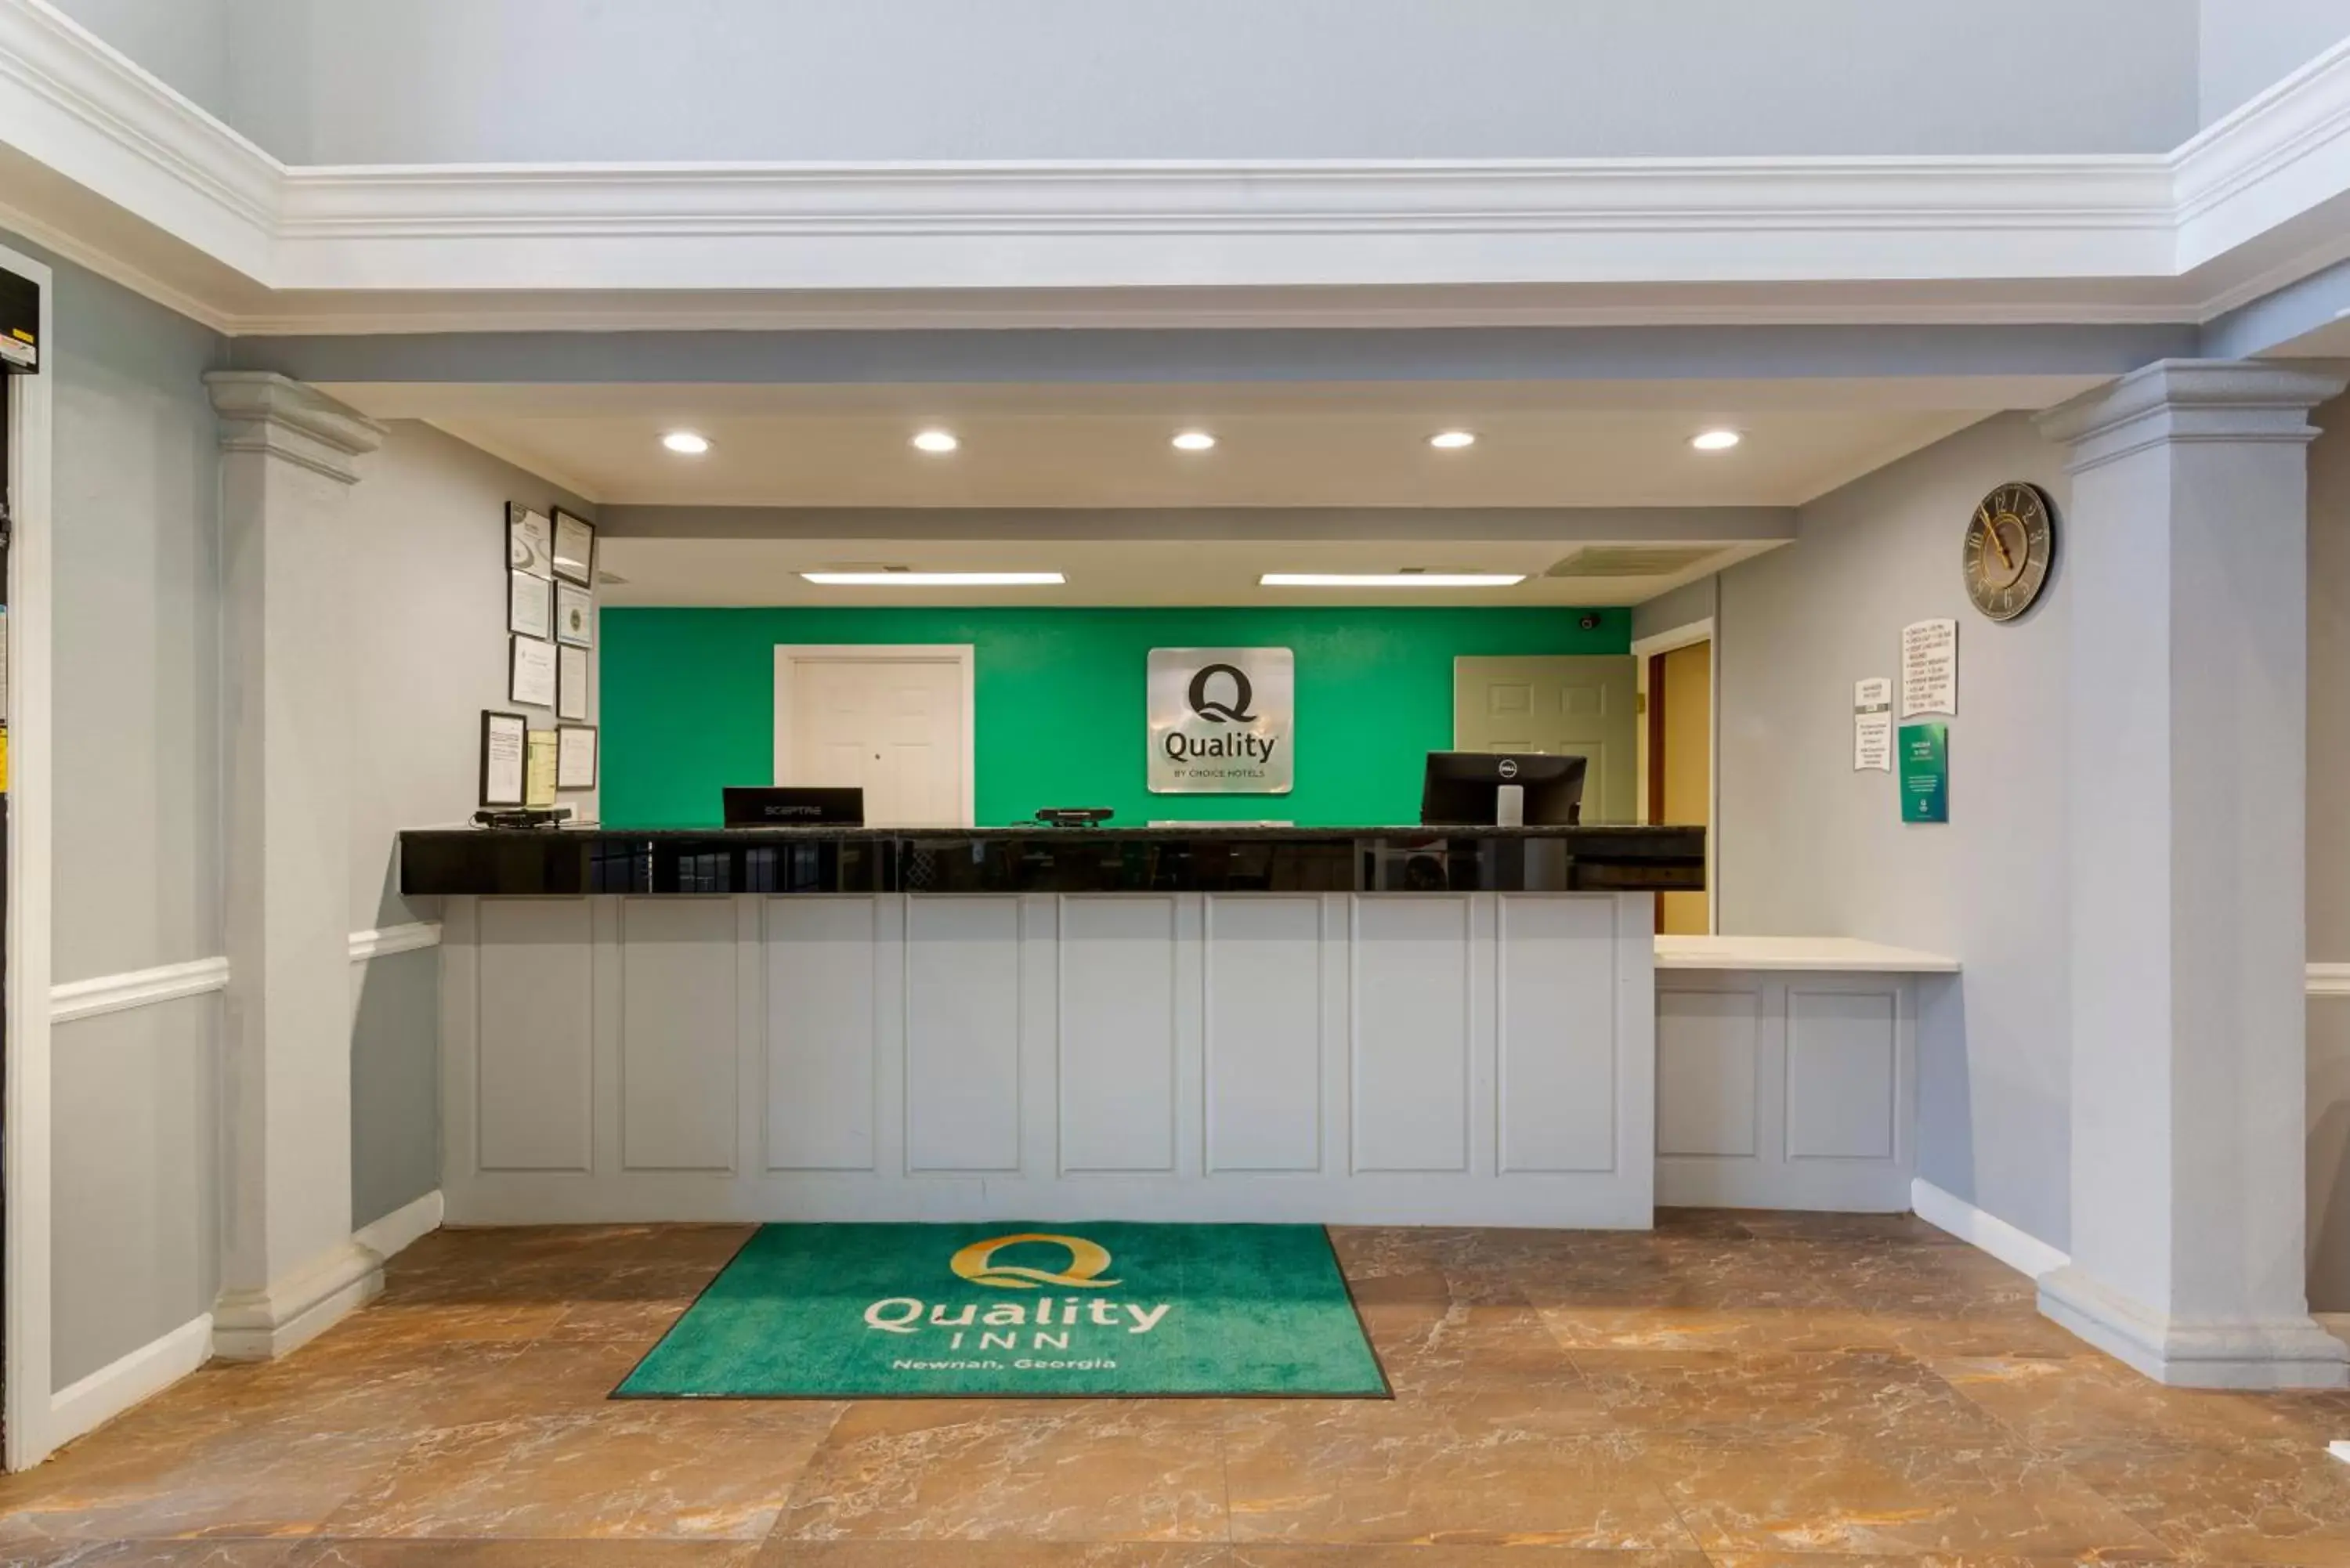 Lobby or reception, Lobby/Reception in Quality Inn Newnan